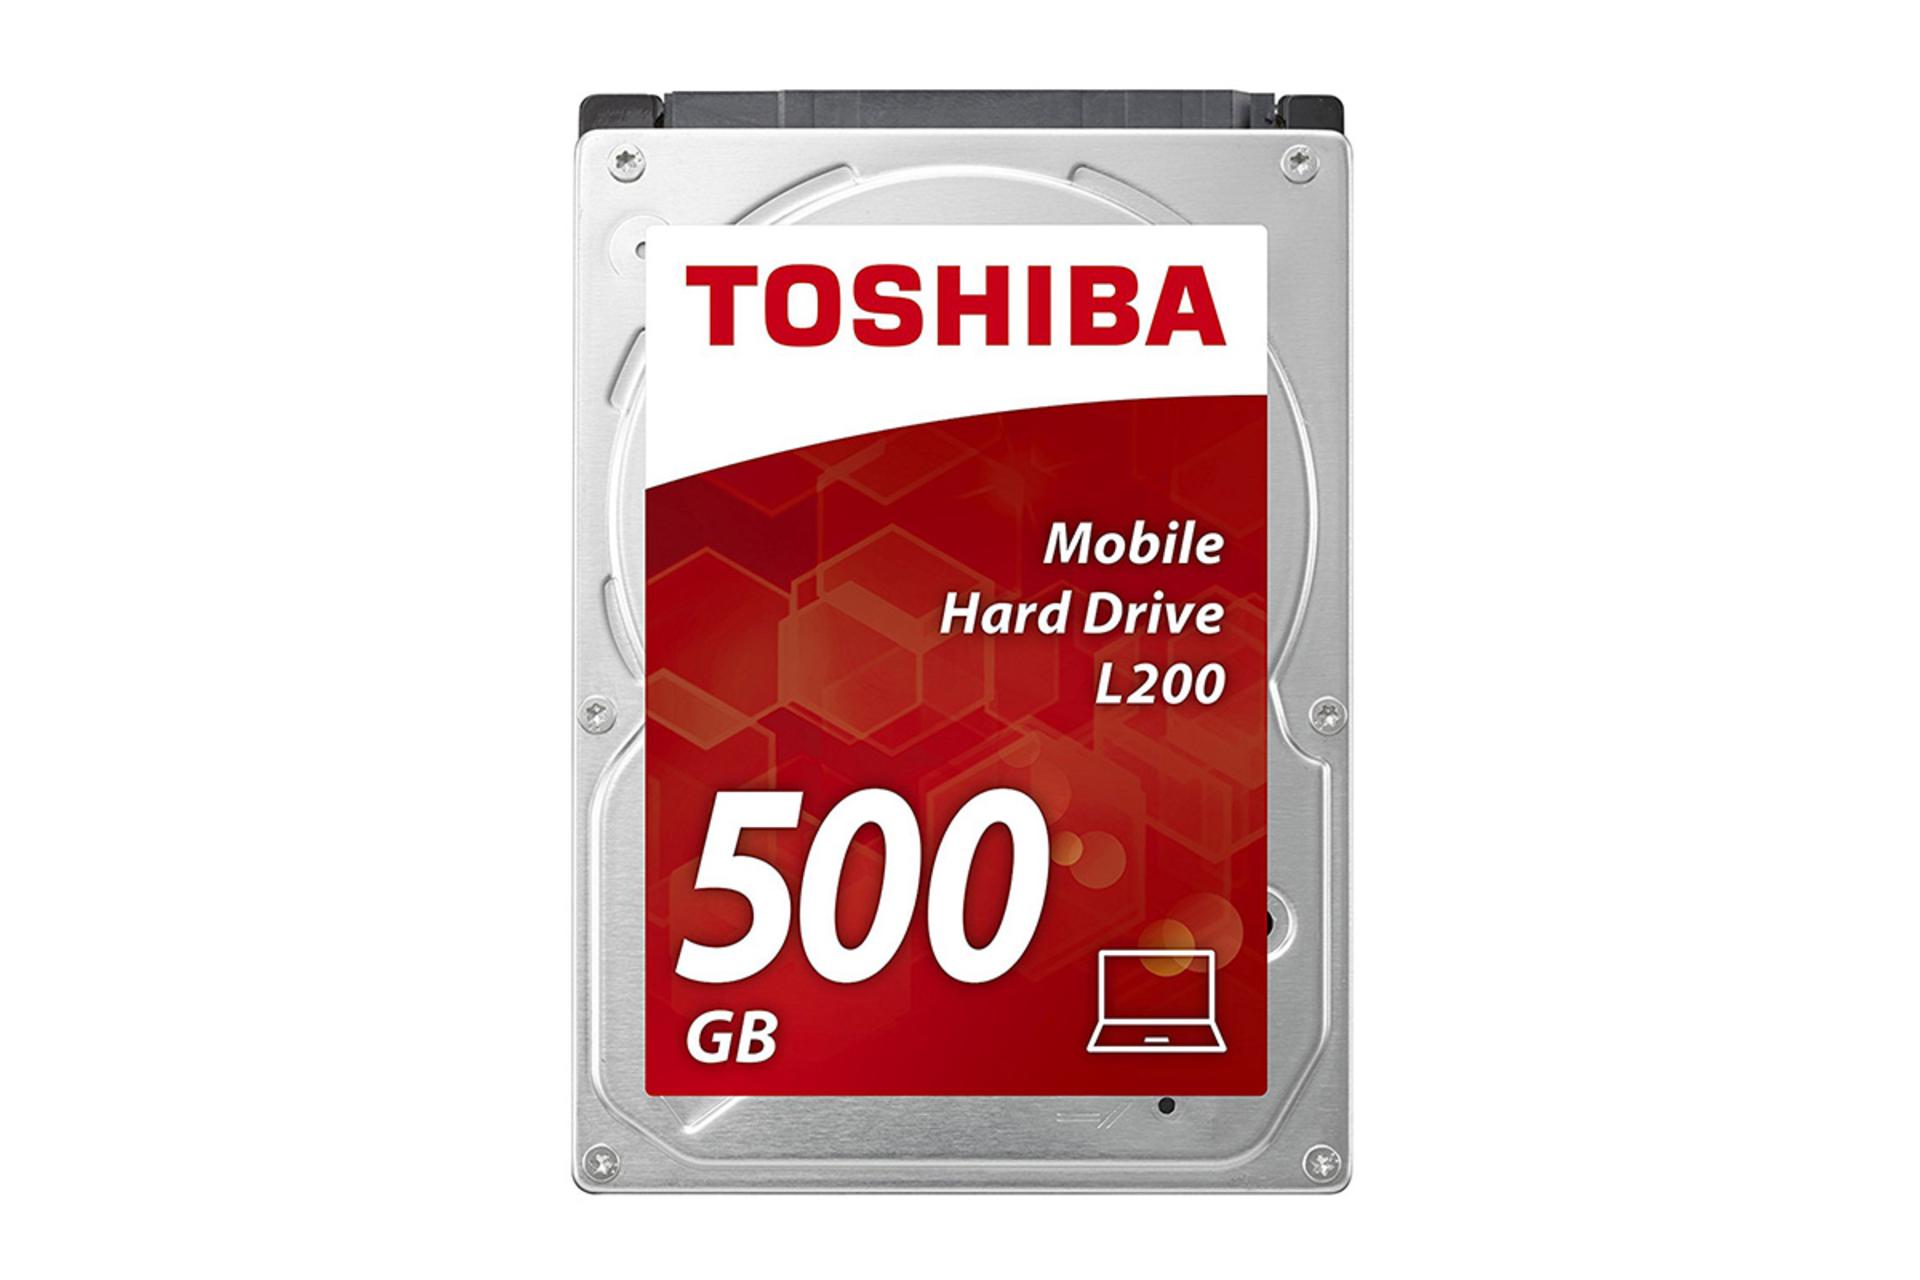 Toshiba L200 HDWJ105 500GB